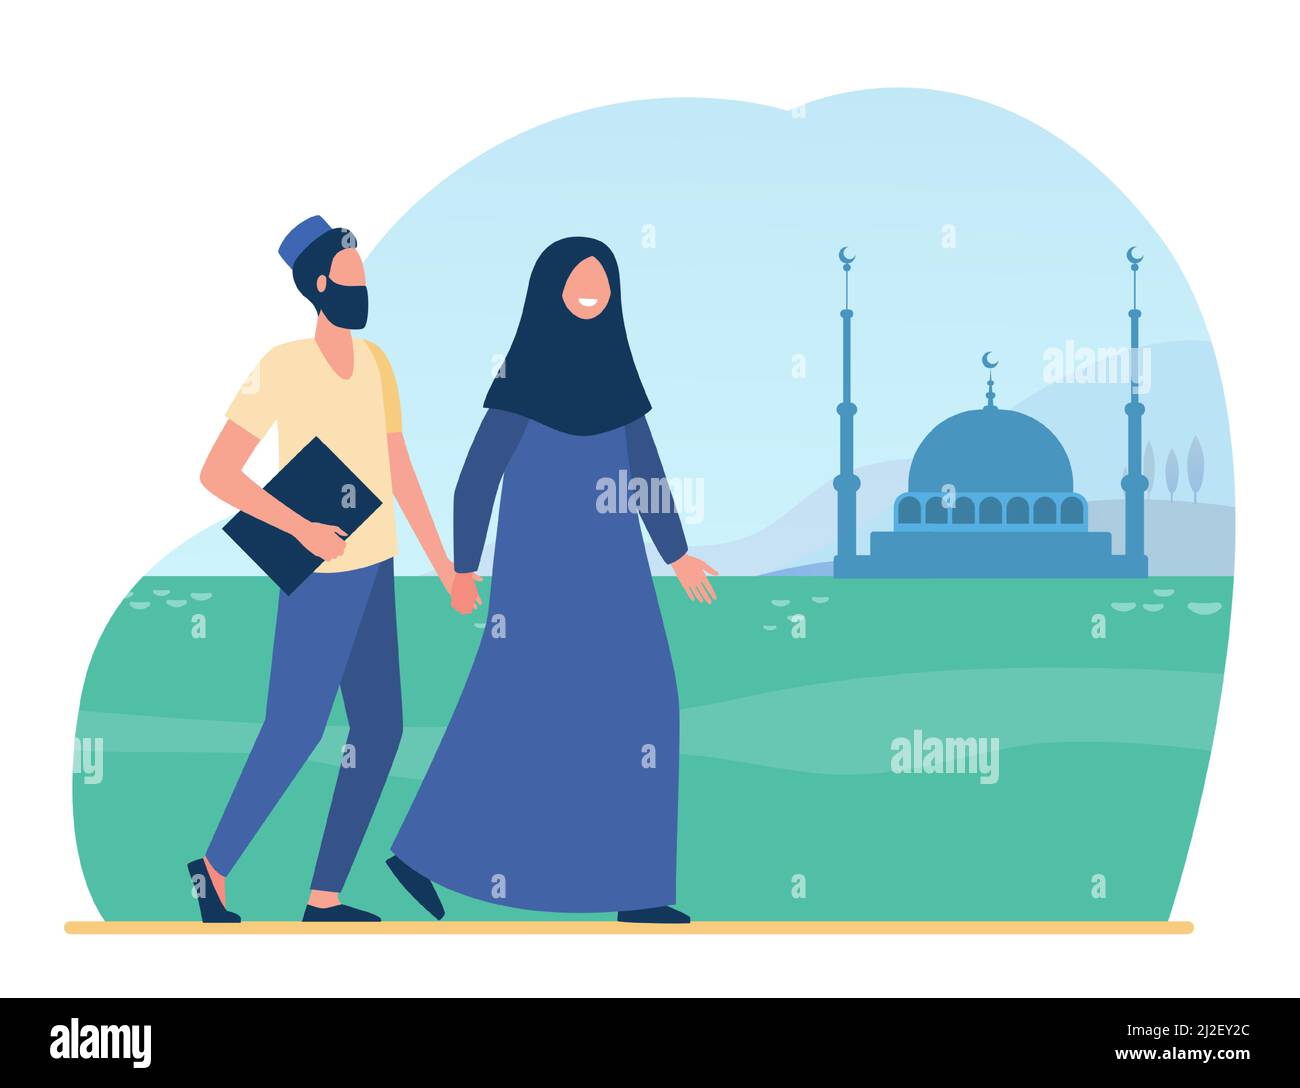 Muslimische Menschen gehen in die Moschee. Islam, Hijab, Anbetung flache Vektor-Illustration. Religion und Tradition Konzept für Banner, Website-Design oder Landung wir Stock Vektor